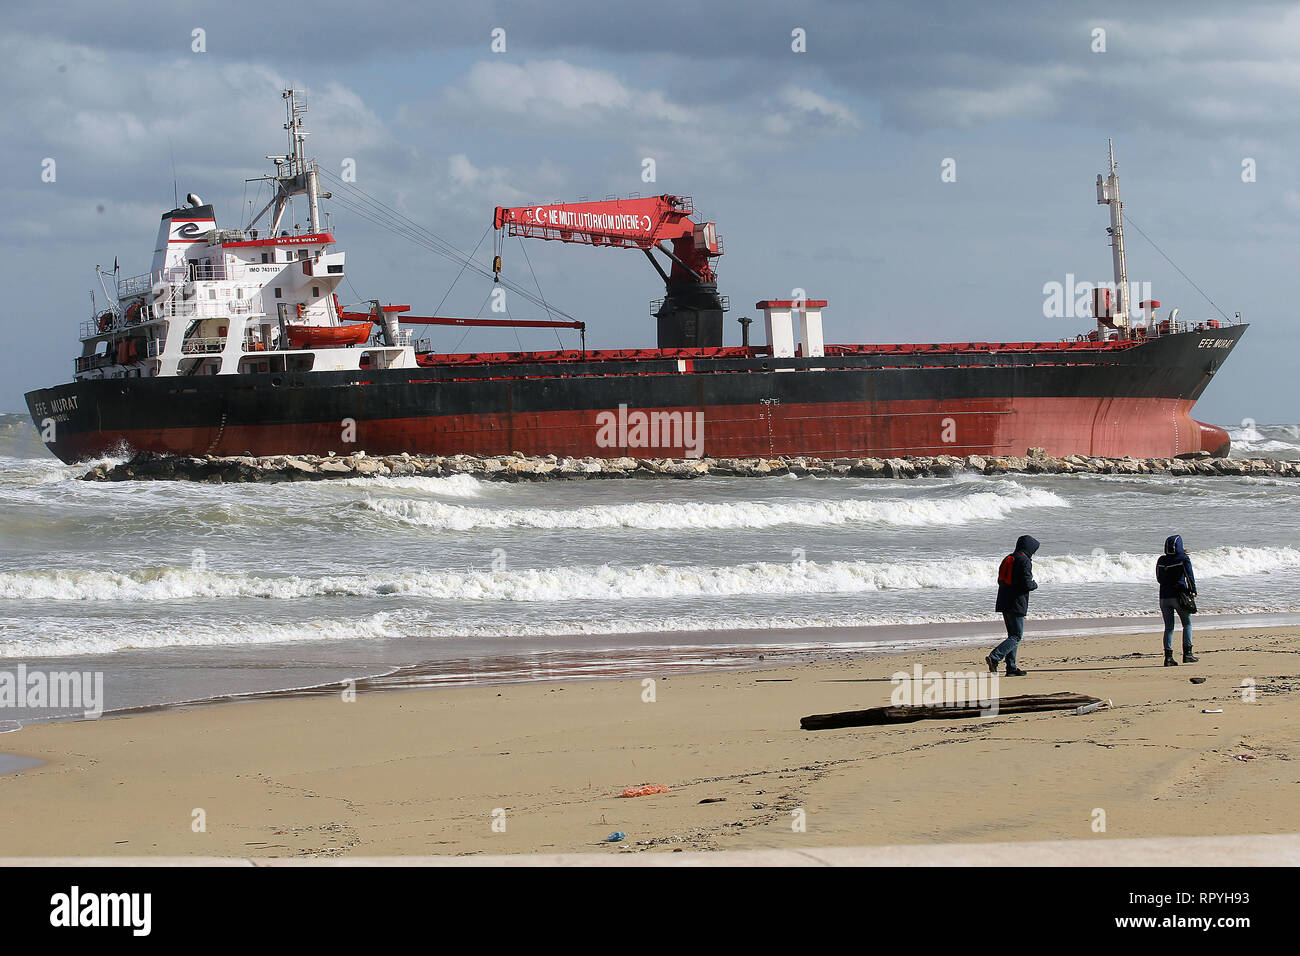 Foto Donato Fasano - LaPresse 23 02 2019 - Bari Cronaca Una nave mercantile  turca spinta dalle raffiche di Vento e della mareggiata tr &# xe8 ; arenata  sul litorale sud di